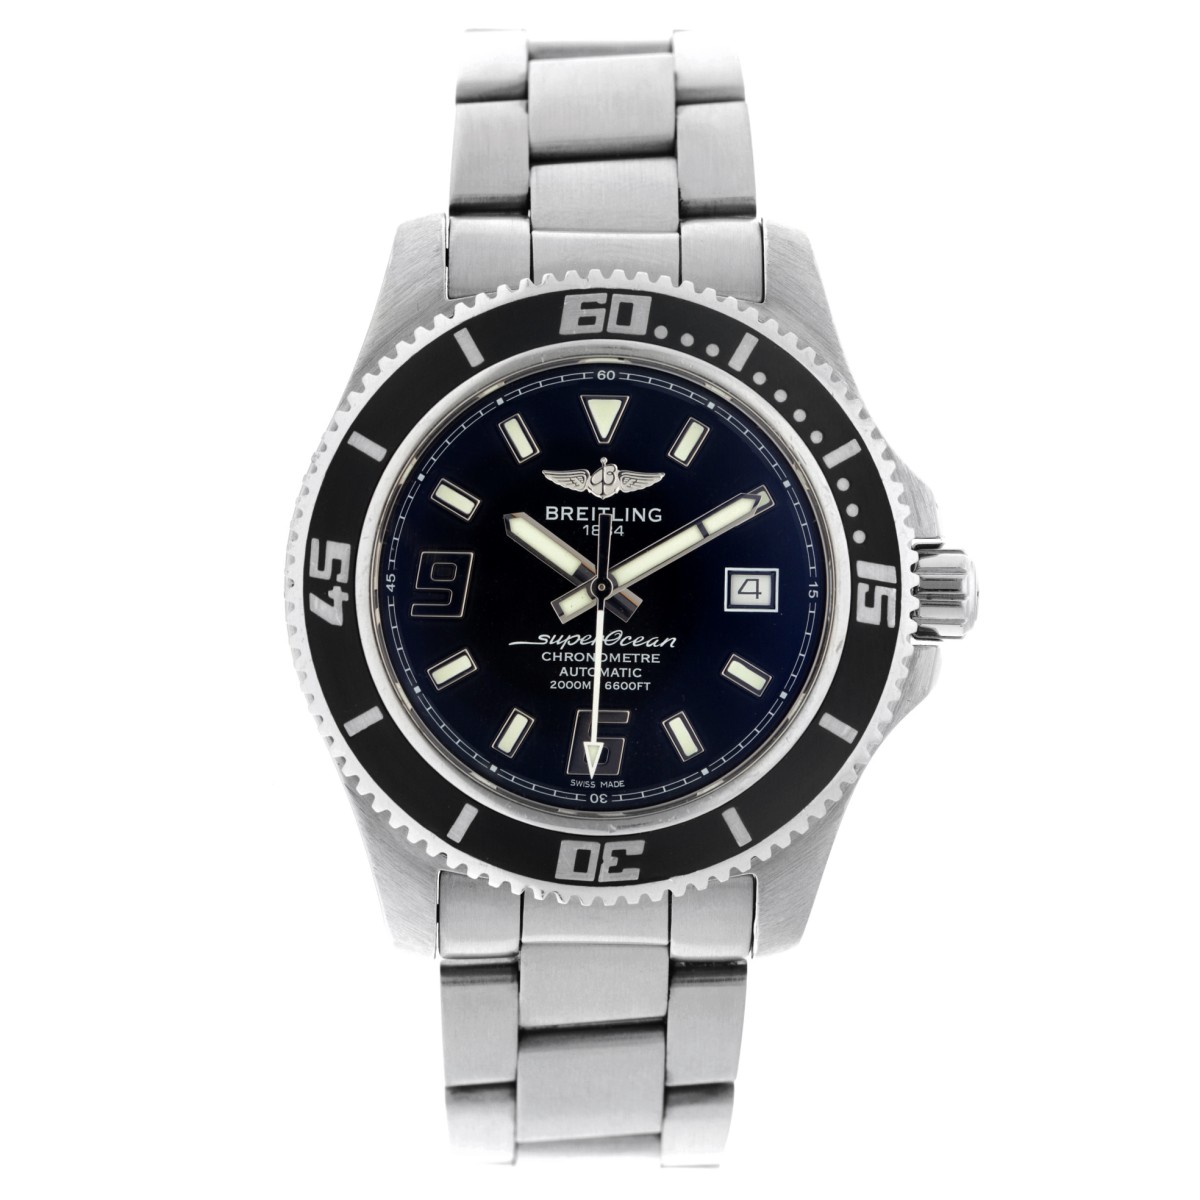 Breitling SuperOcean 44 A1739102/BA77 - Heren horloge - 2014.